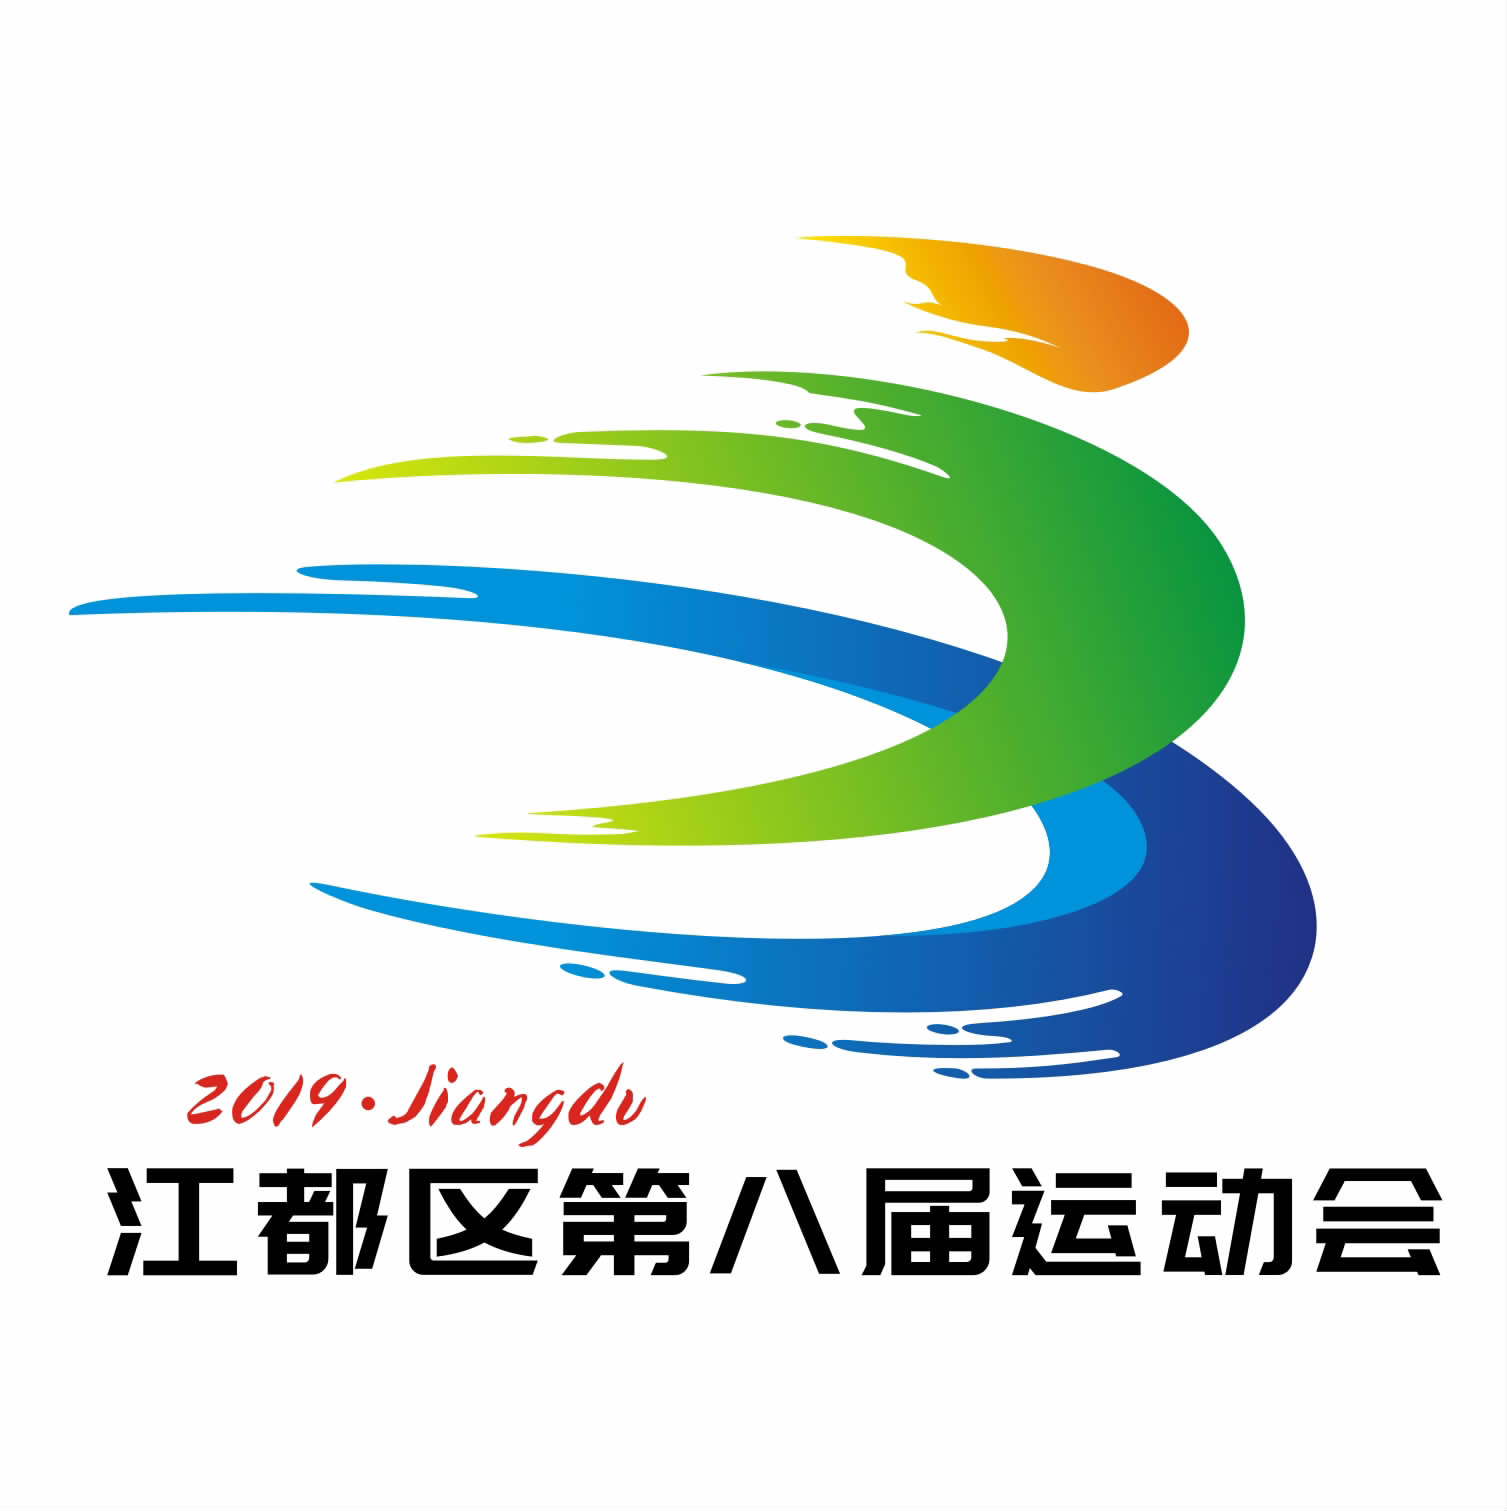 蔡俊)记者昨日从区文化体育和旅游局获悉,江都区第八届运动会会徽经过